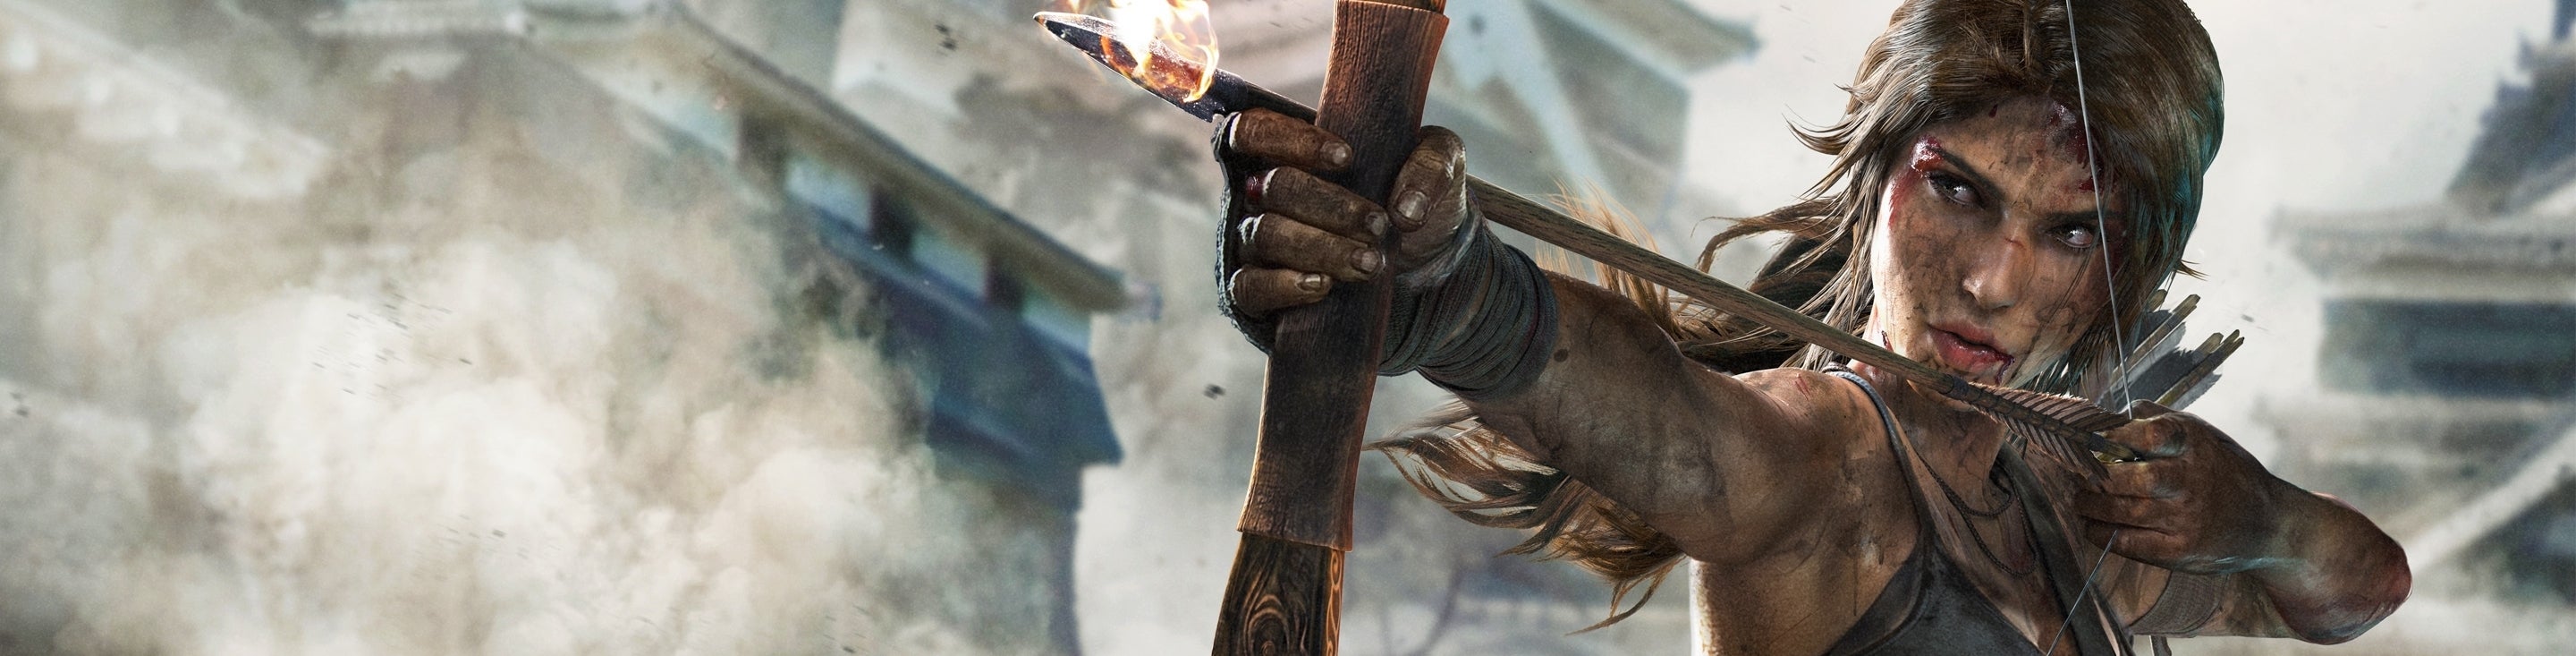 Imagen para Análisis de rendimiento de Tomb Raider Definitive Edition